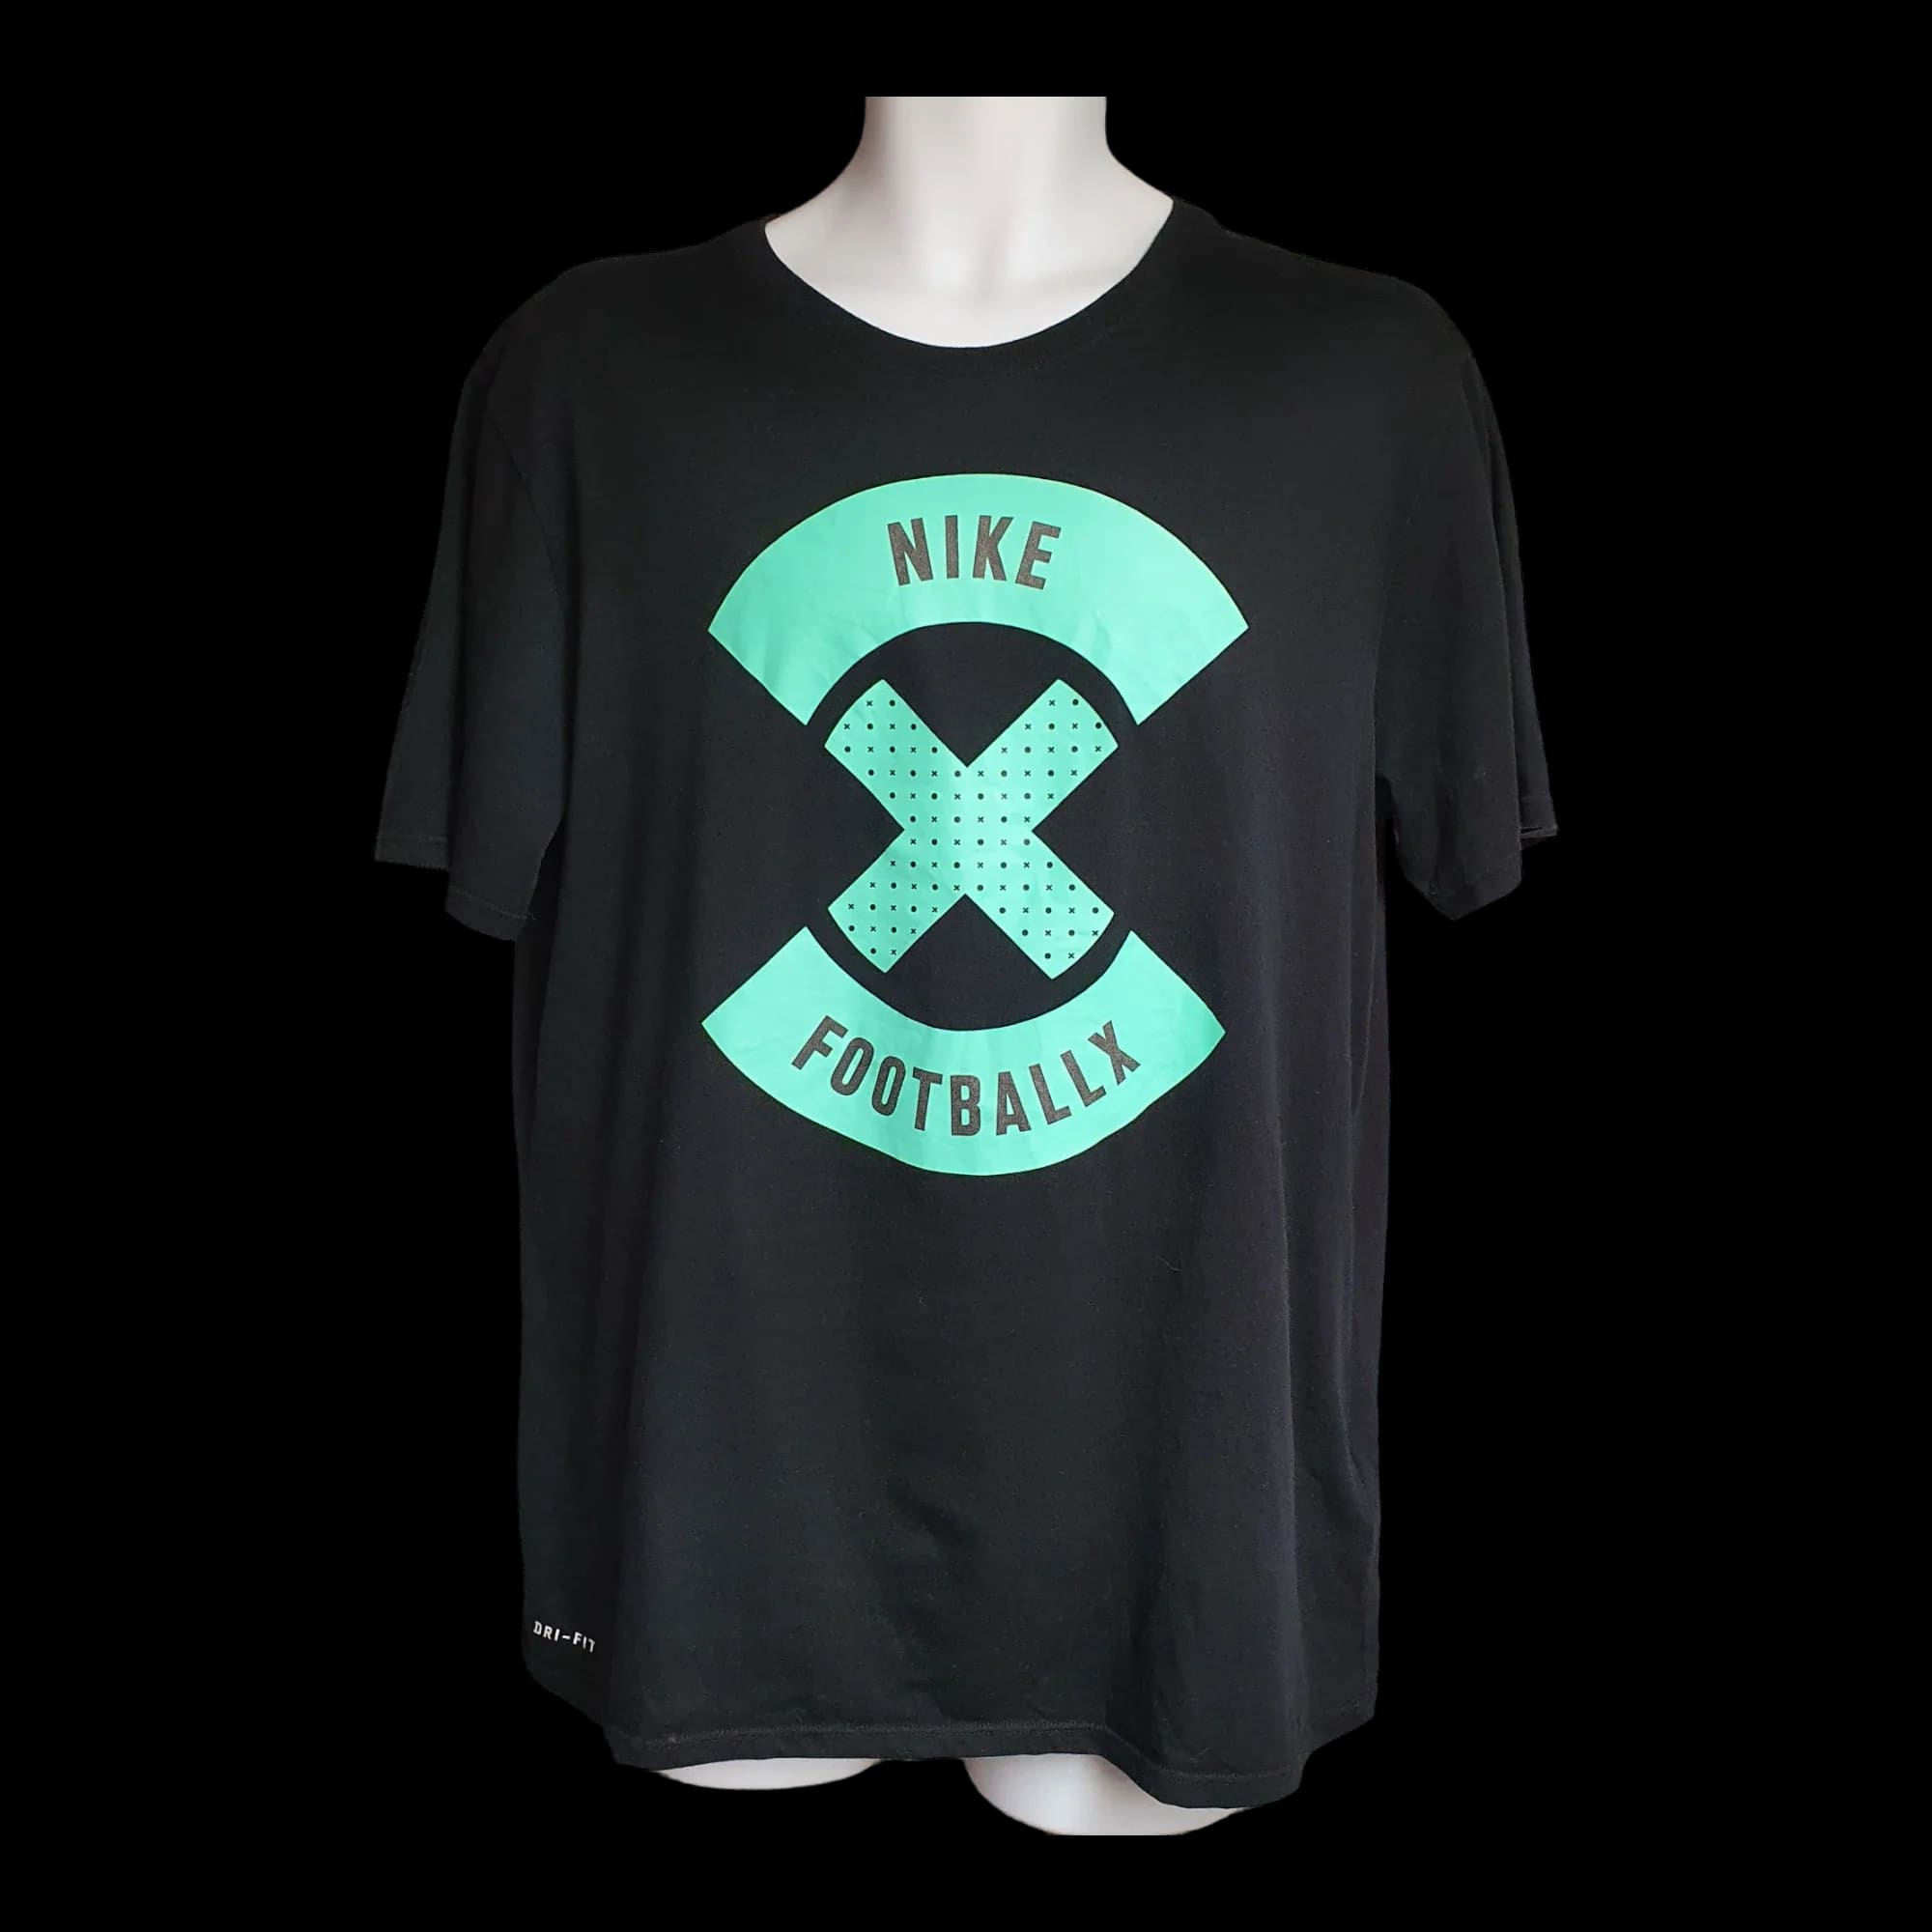 Unisex Nike Football X Black T-shirt UK Large - T-Shirts